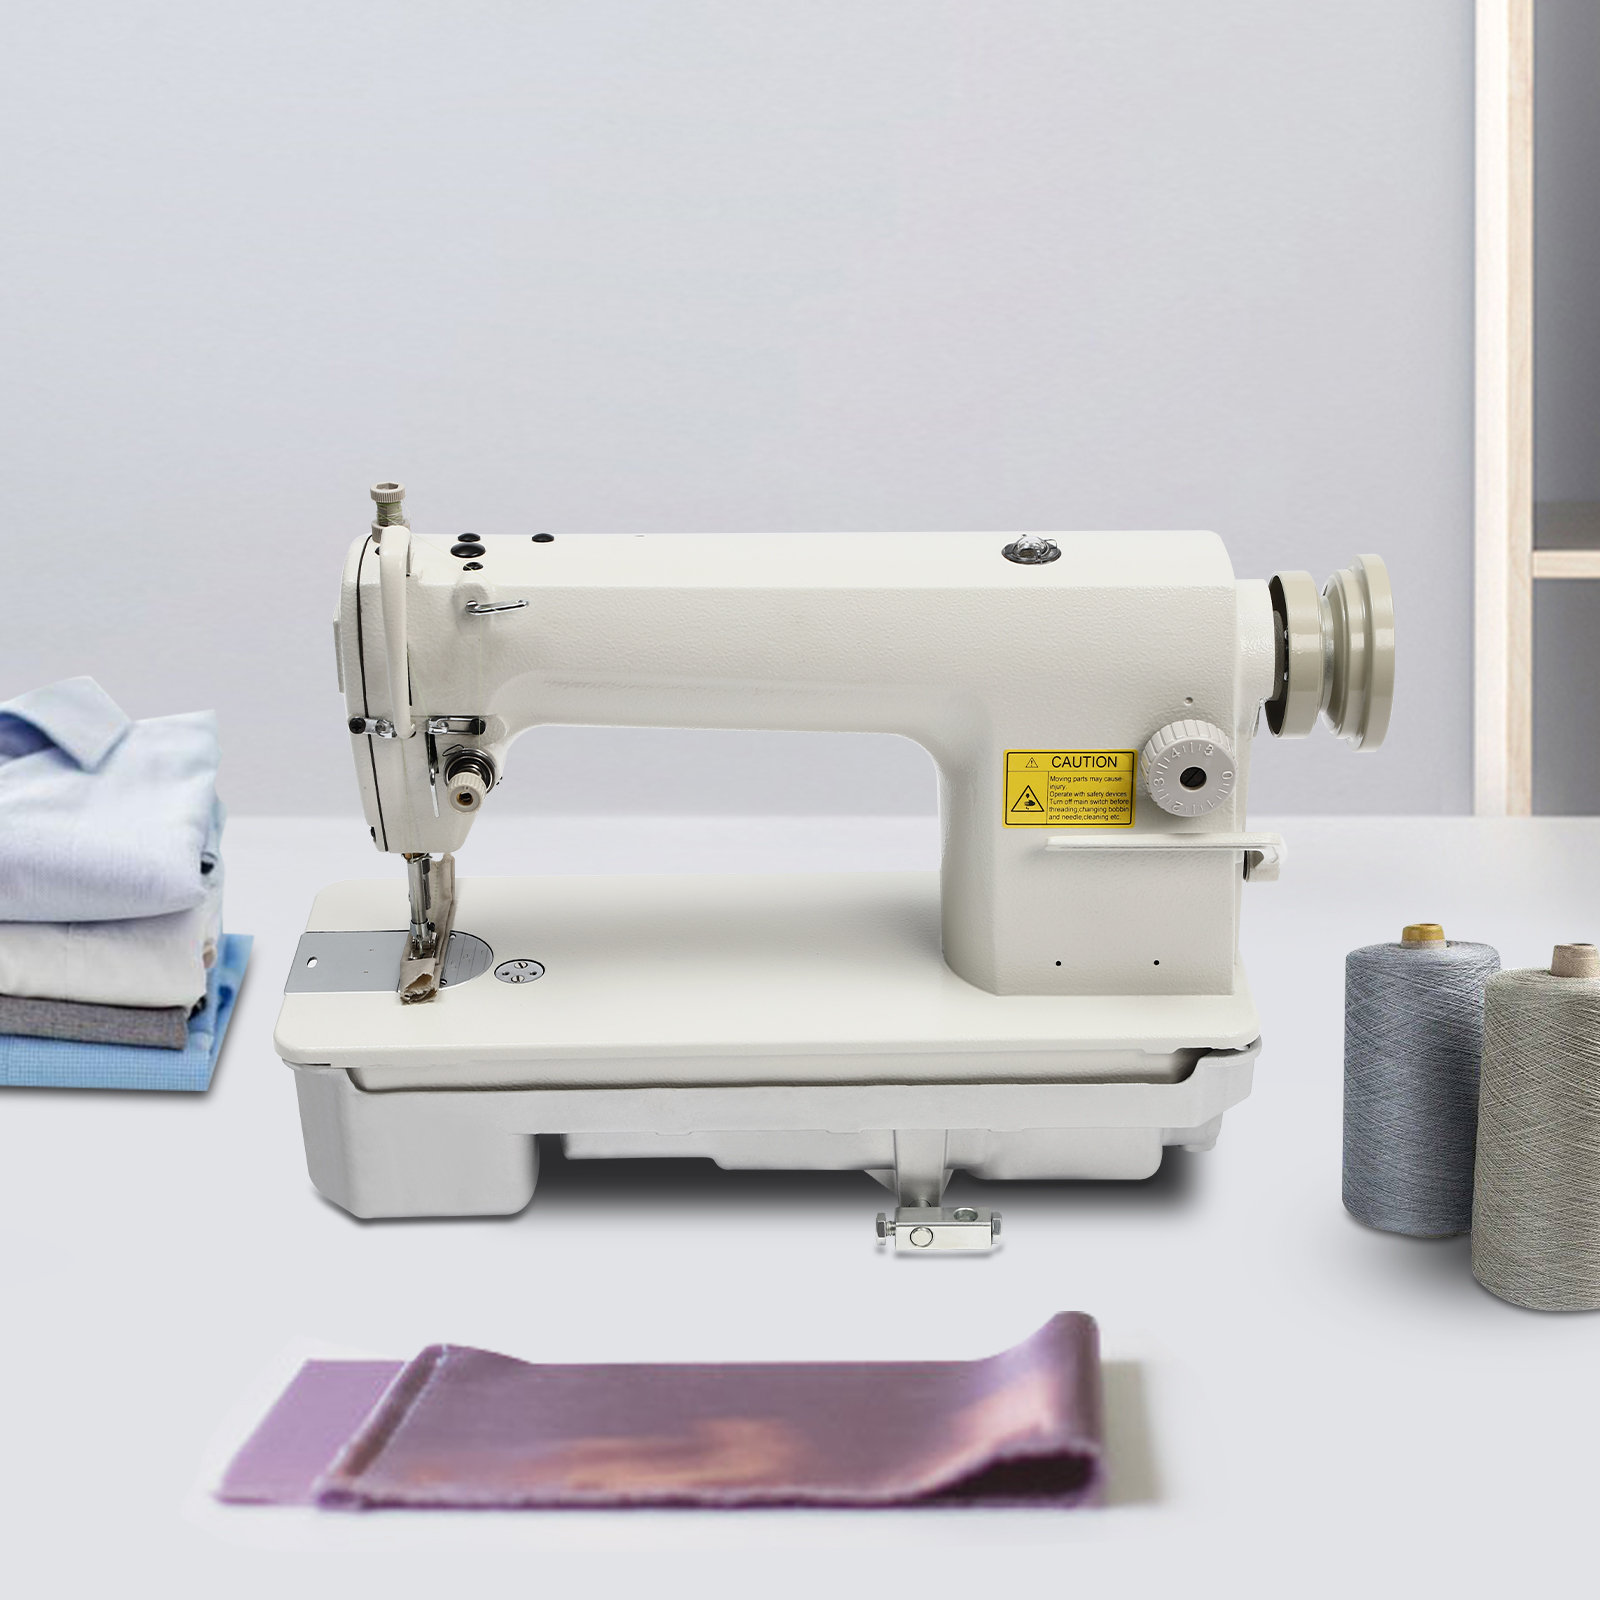 Vintage White Brand Sewing Machine W/ Foot Pedal Zigzag Stitcher